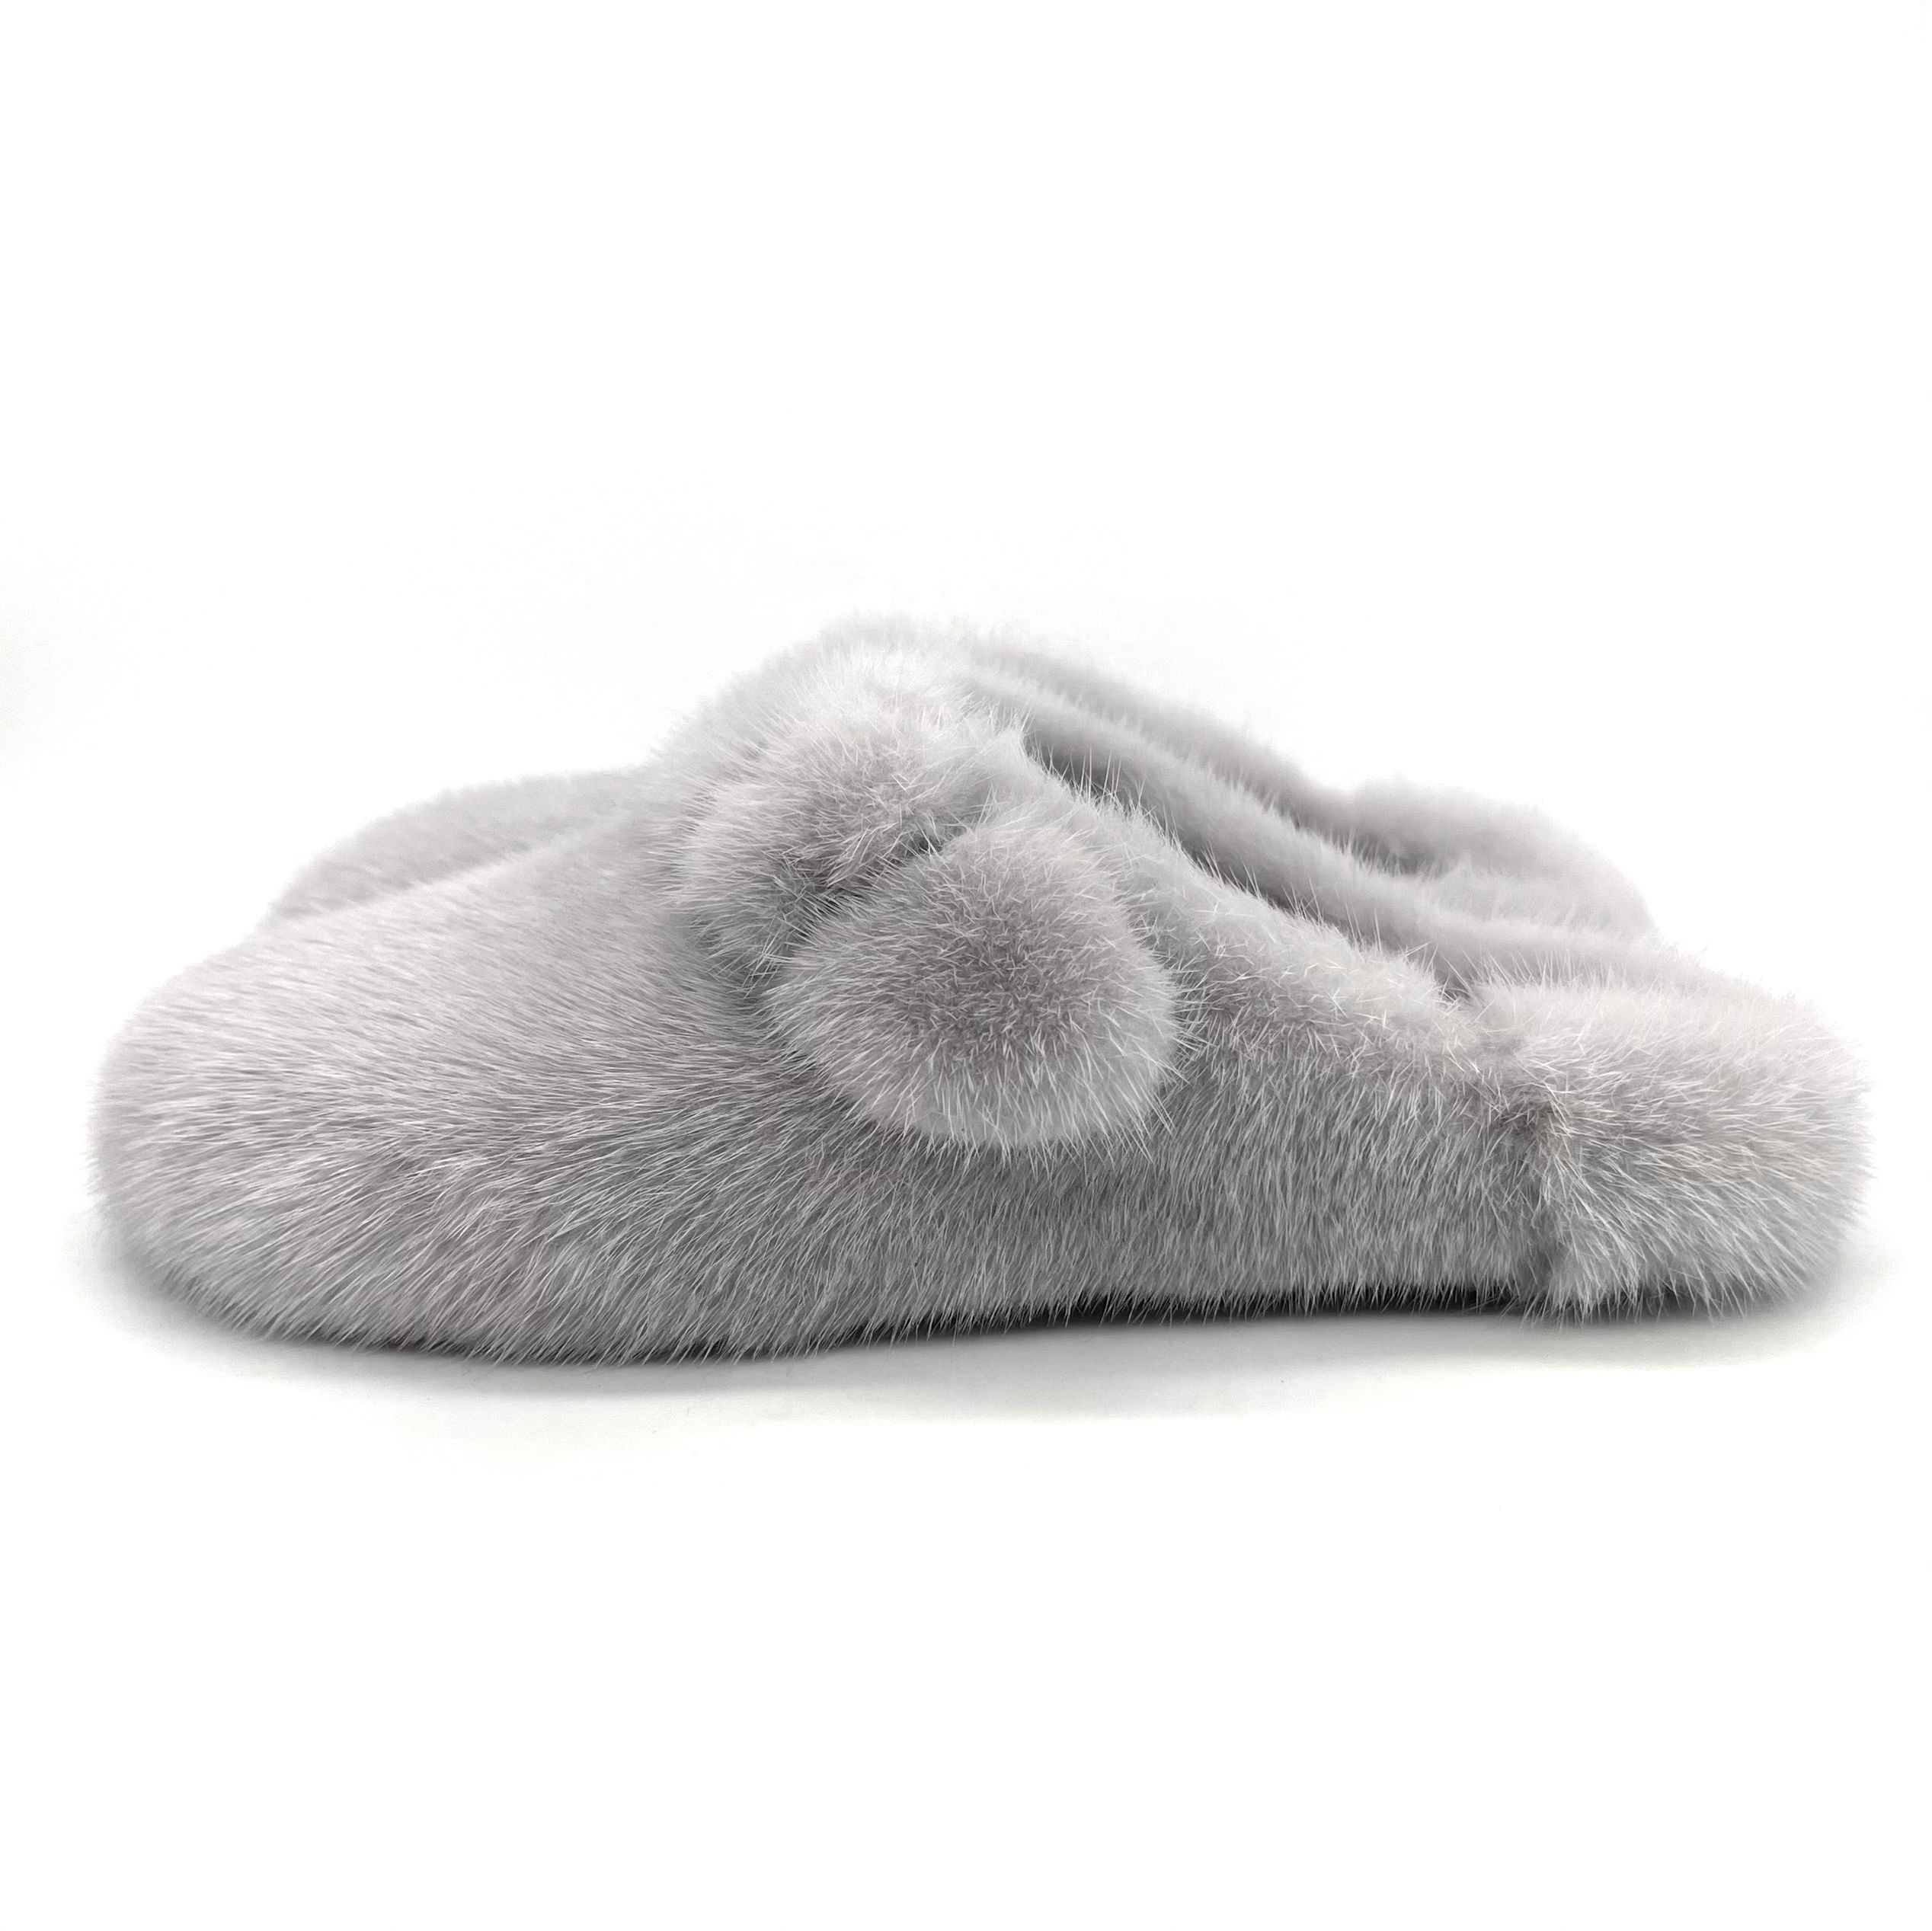 HT1129 Fashion Winter Warm Fluffy Faux Mink Mules Flat Slides Fèmen zòtèy Loafers Andedan kay deyò Pantouf fouri pou fanm